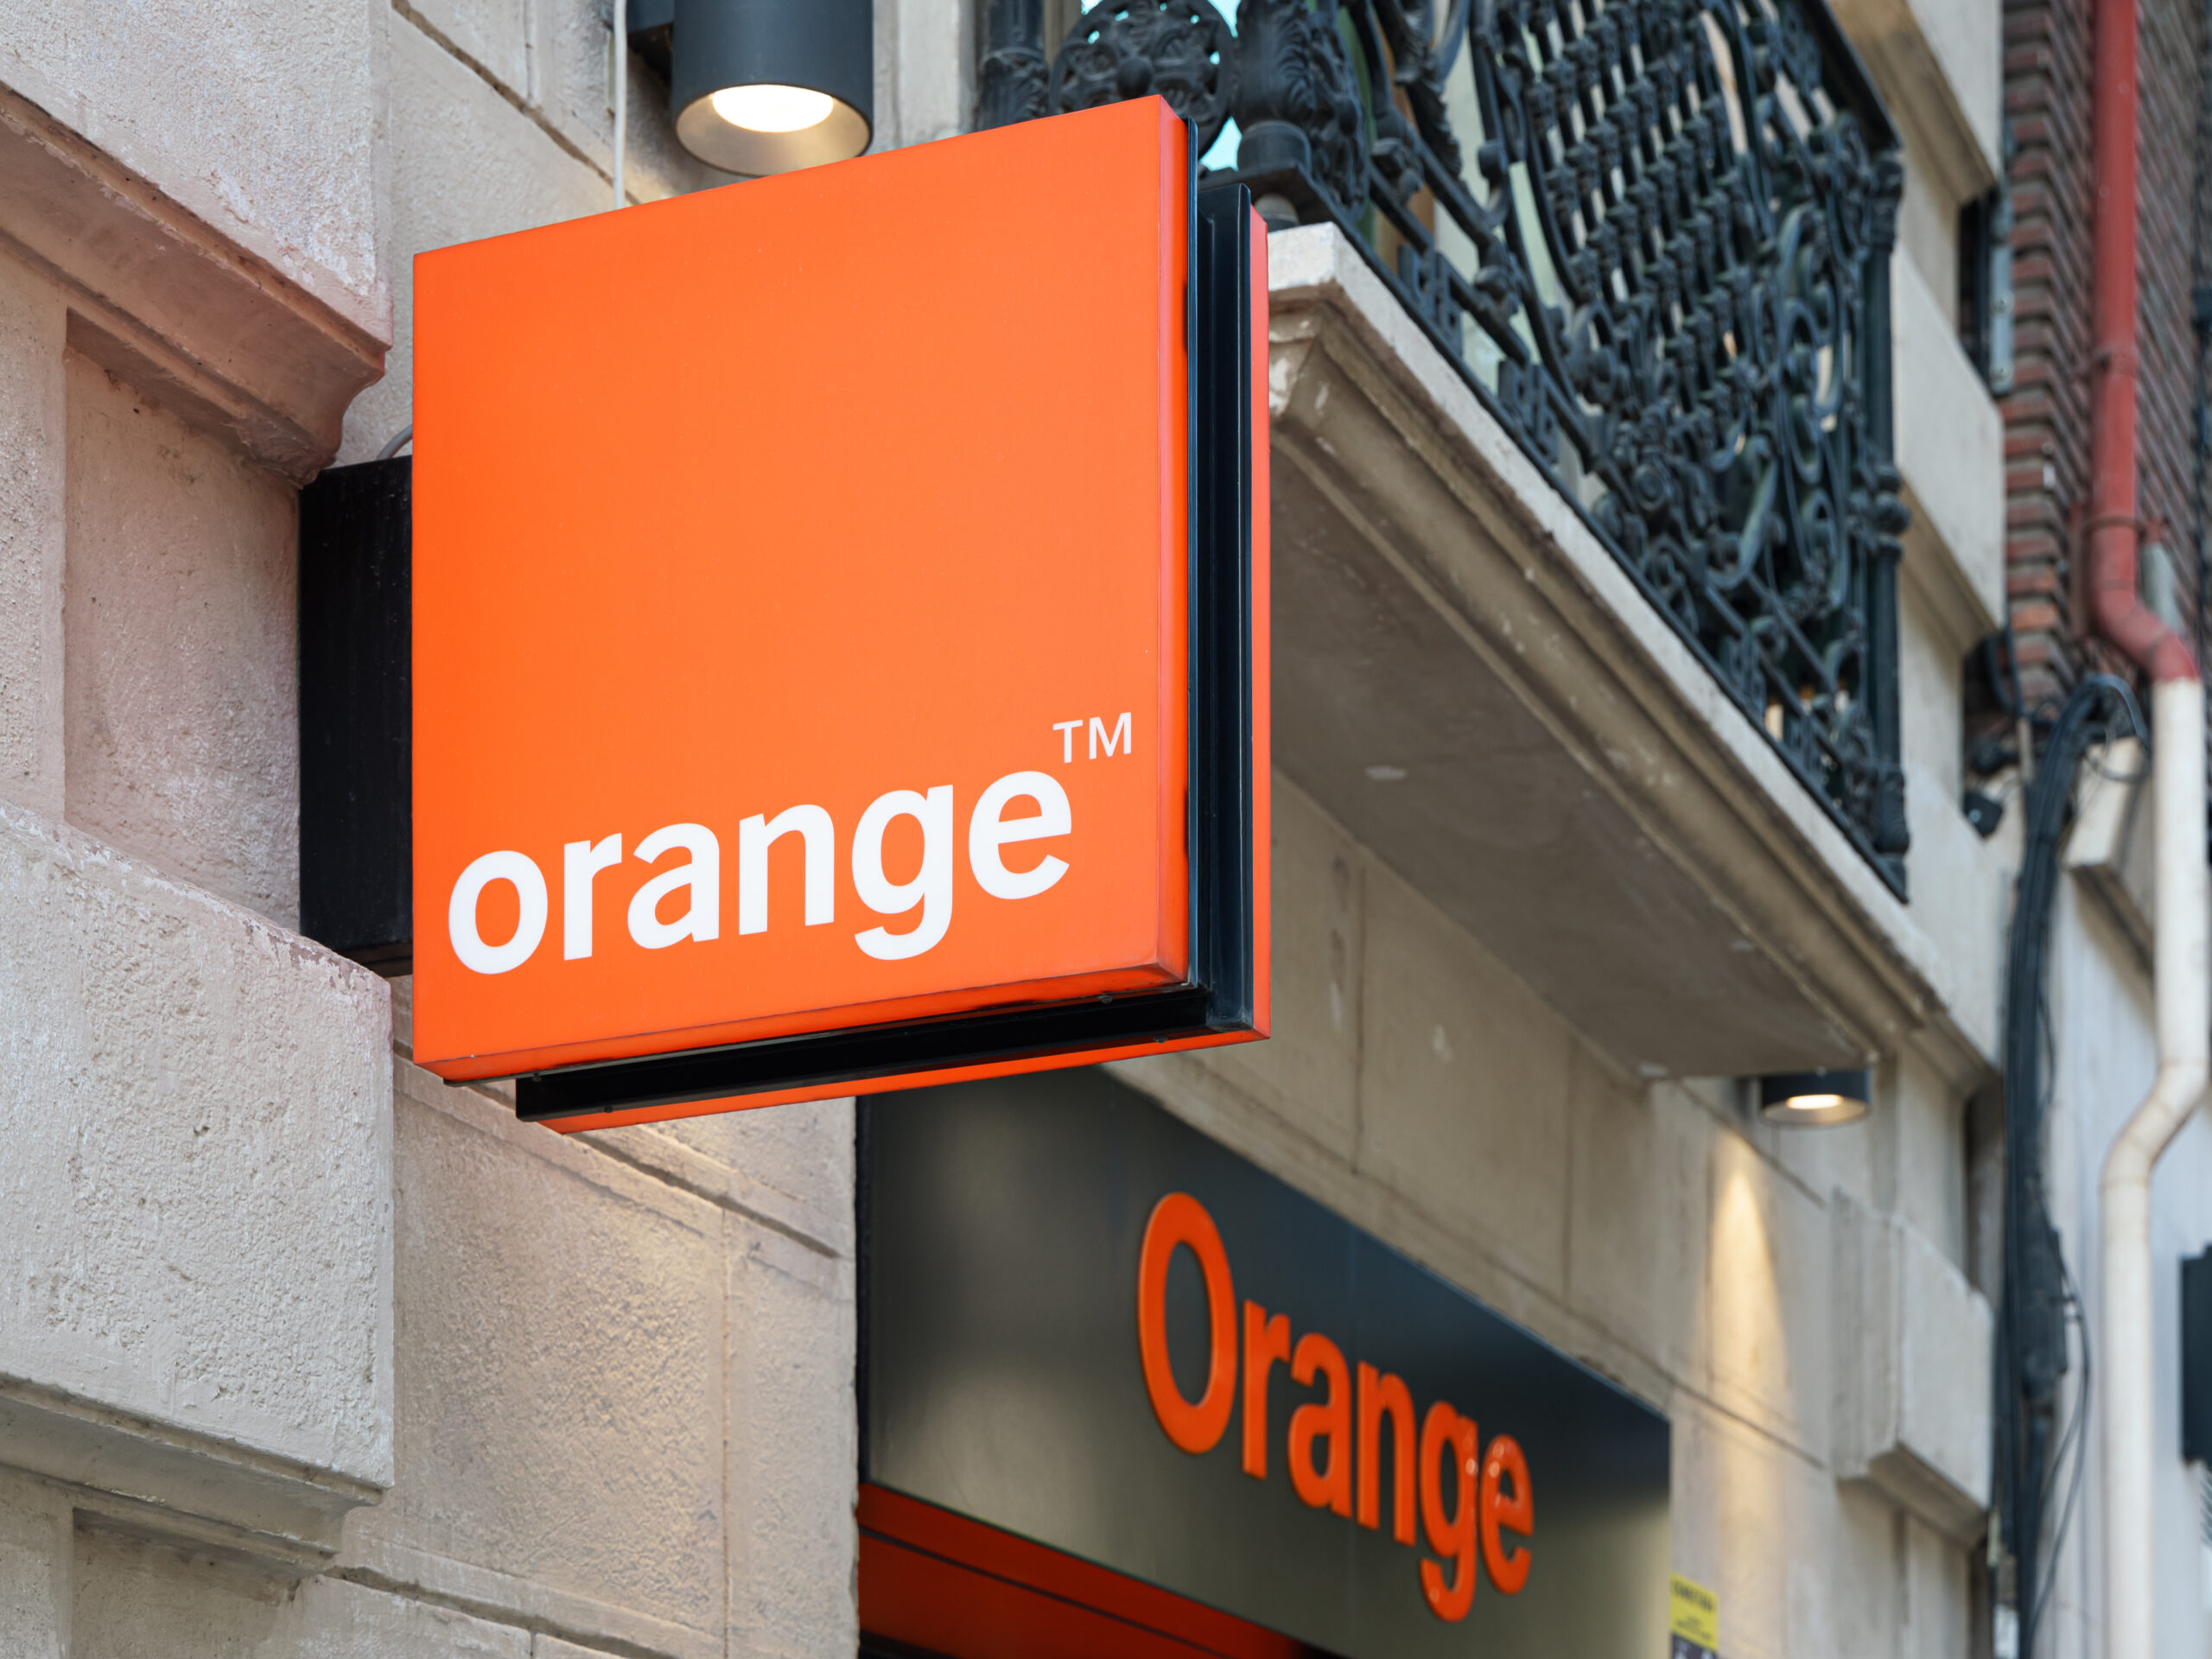 orange wygasza 3g. mieszkańcy kolejnych terenów muszą przygotować się na zmianę